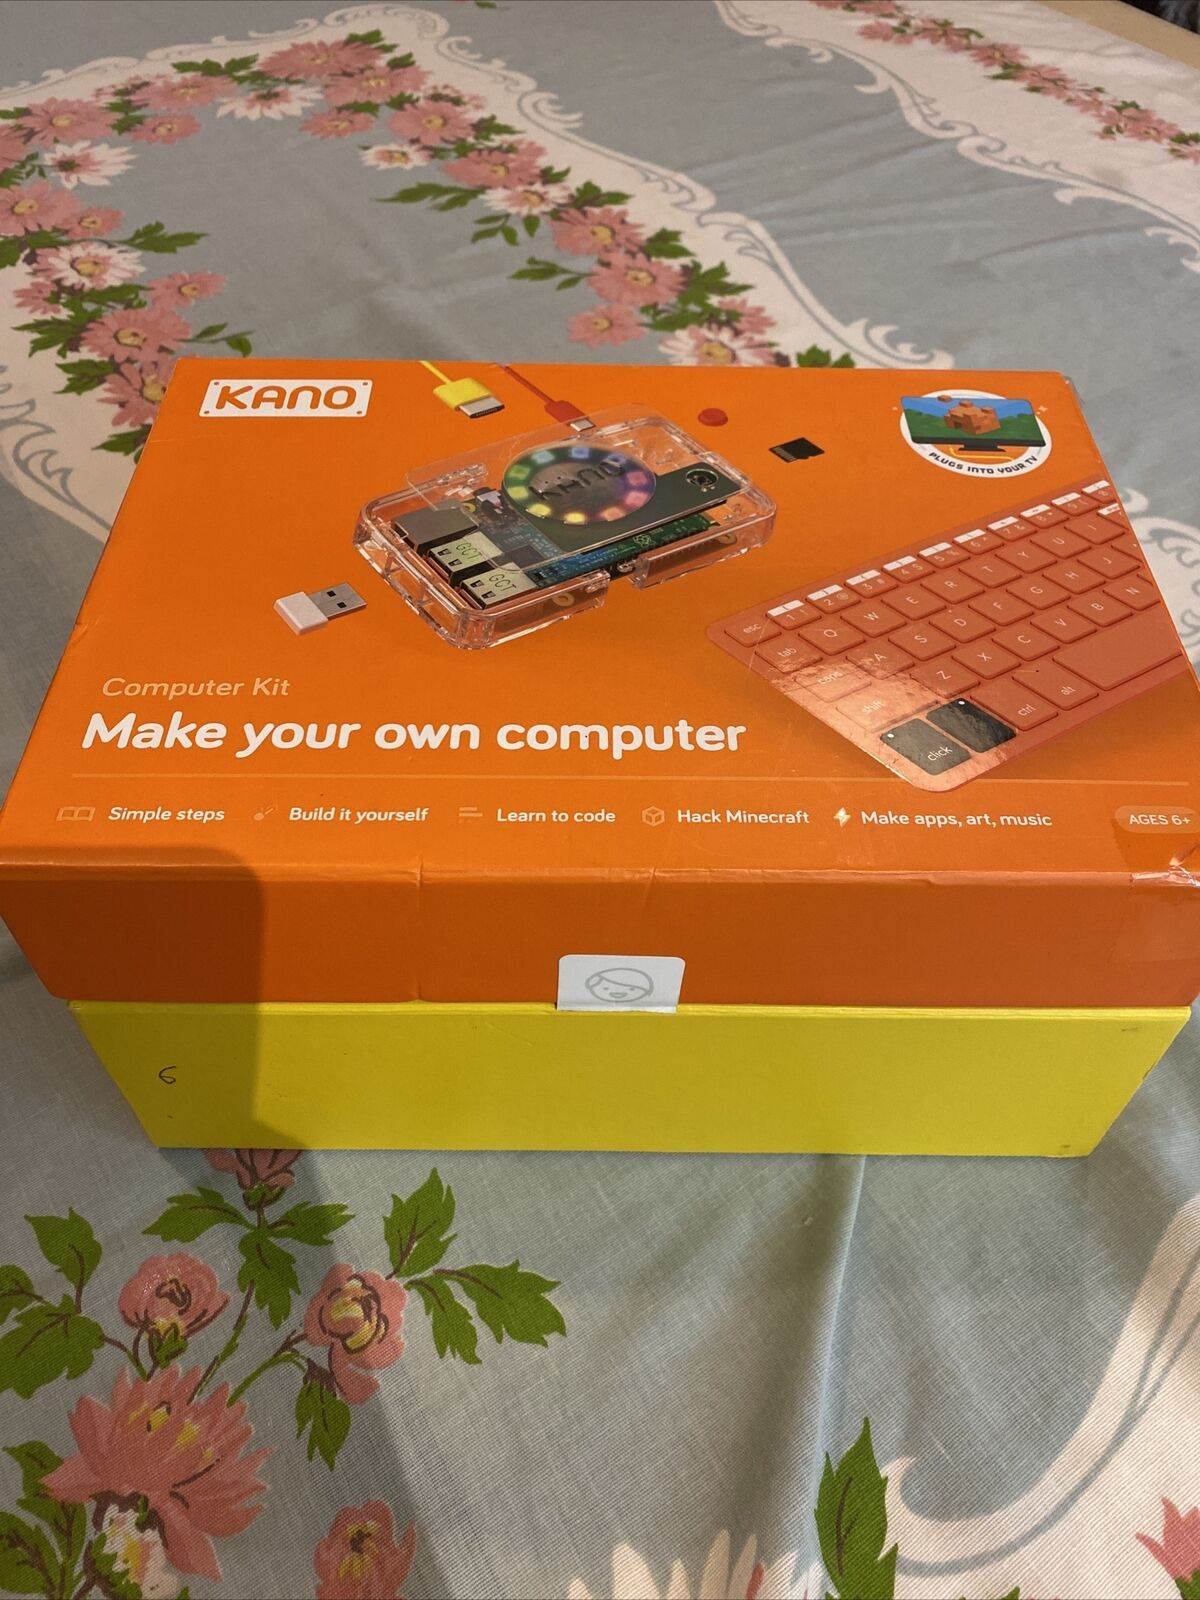 KANO Kit Make a computer 2017 AND KANO screen kit 2015 LOT